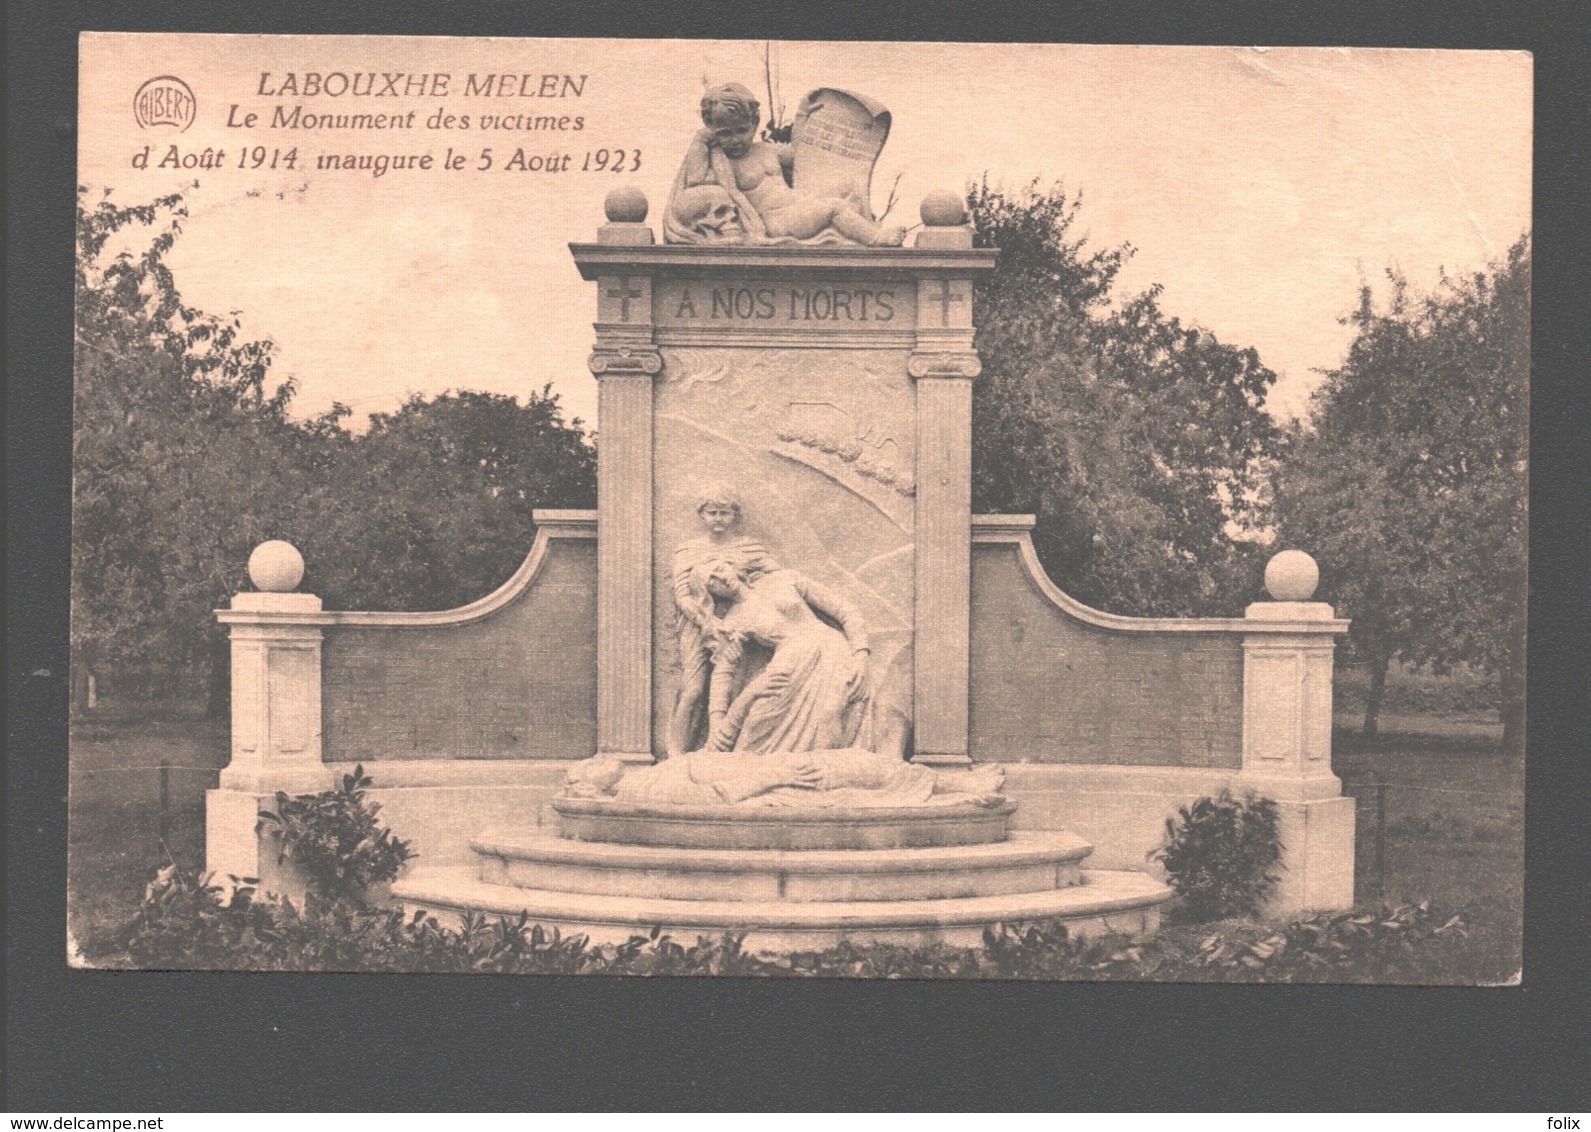 Melen / Labouxhe-Melen - Le Monument Des Victimes D'Août 1914, Inauguré Le 5 Août 1923 - Soumagne